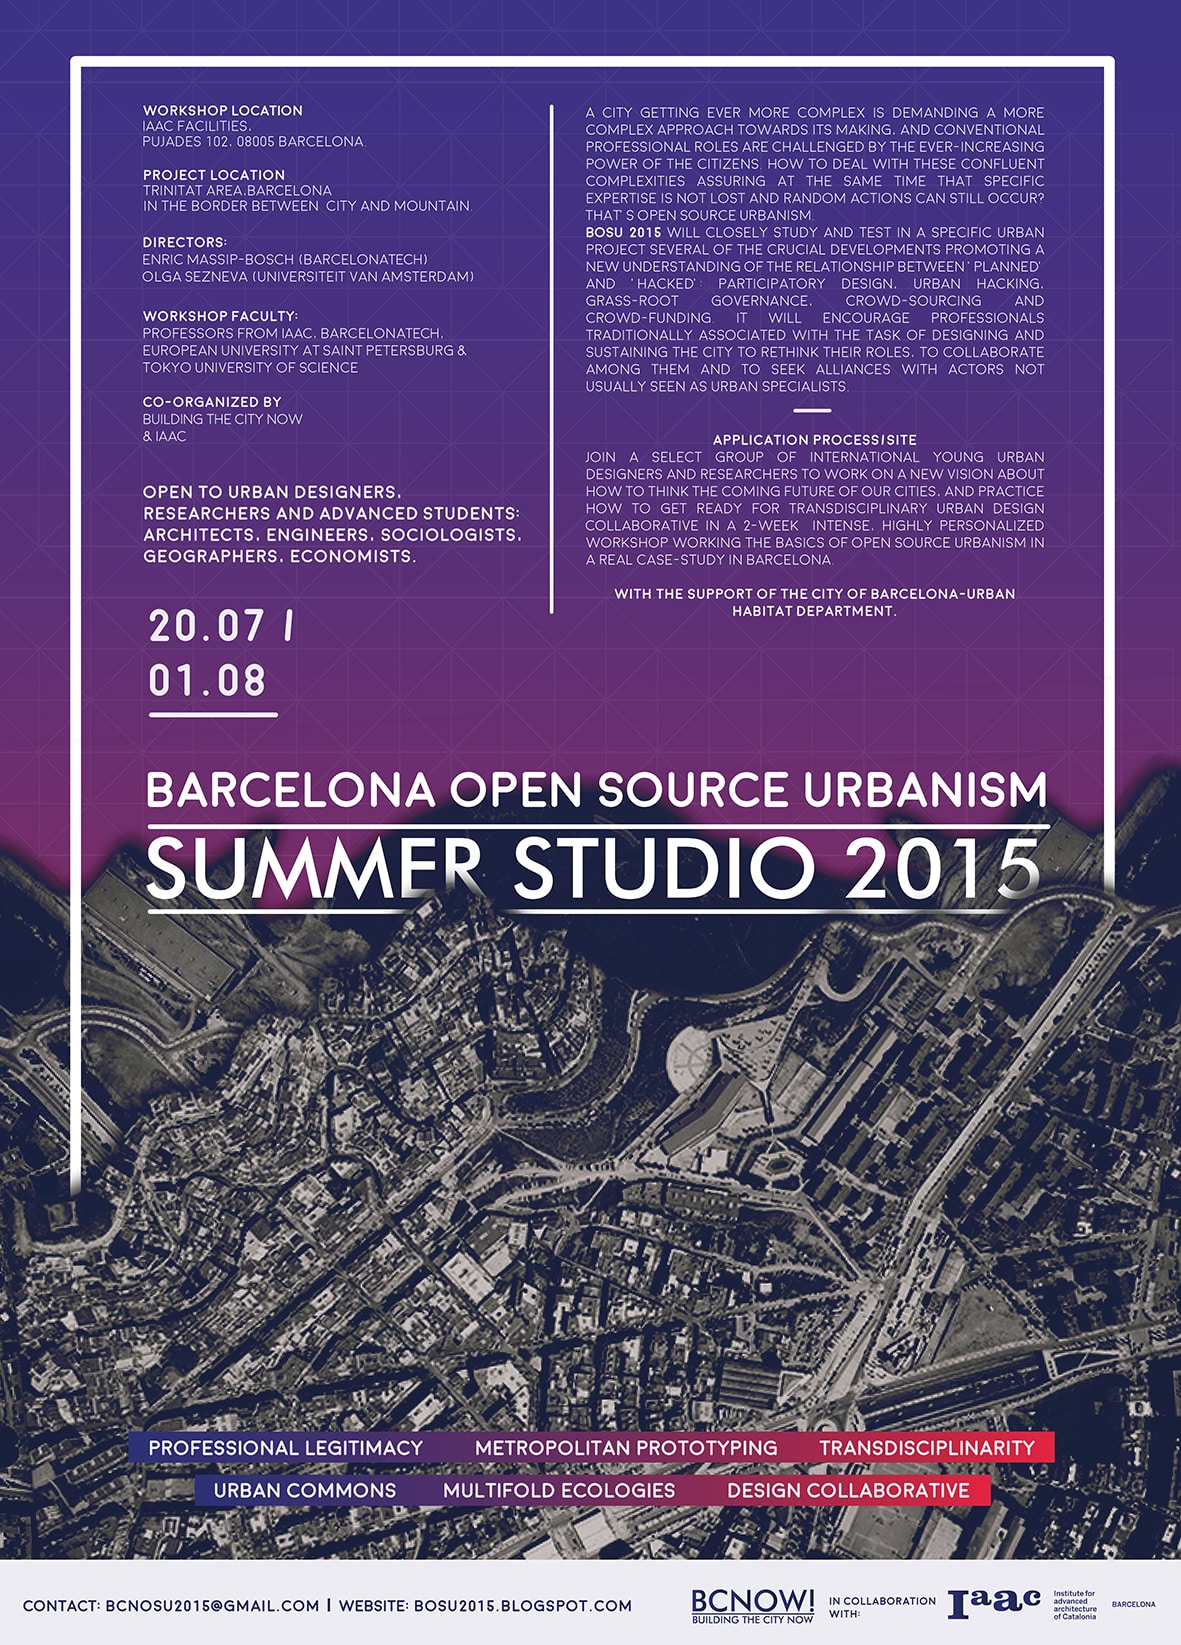 Barcelona Open Source Urbanism Summer Studio